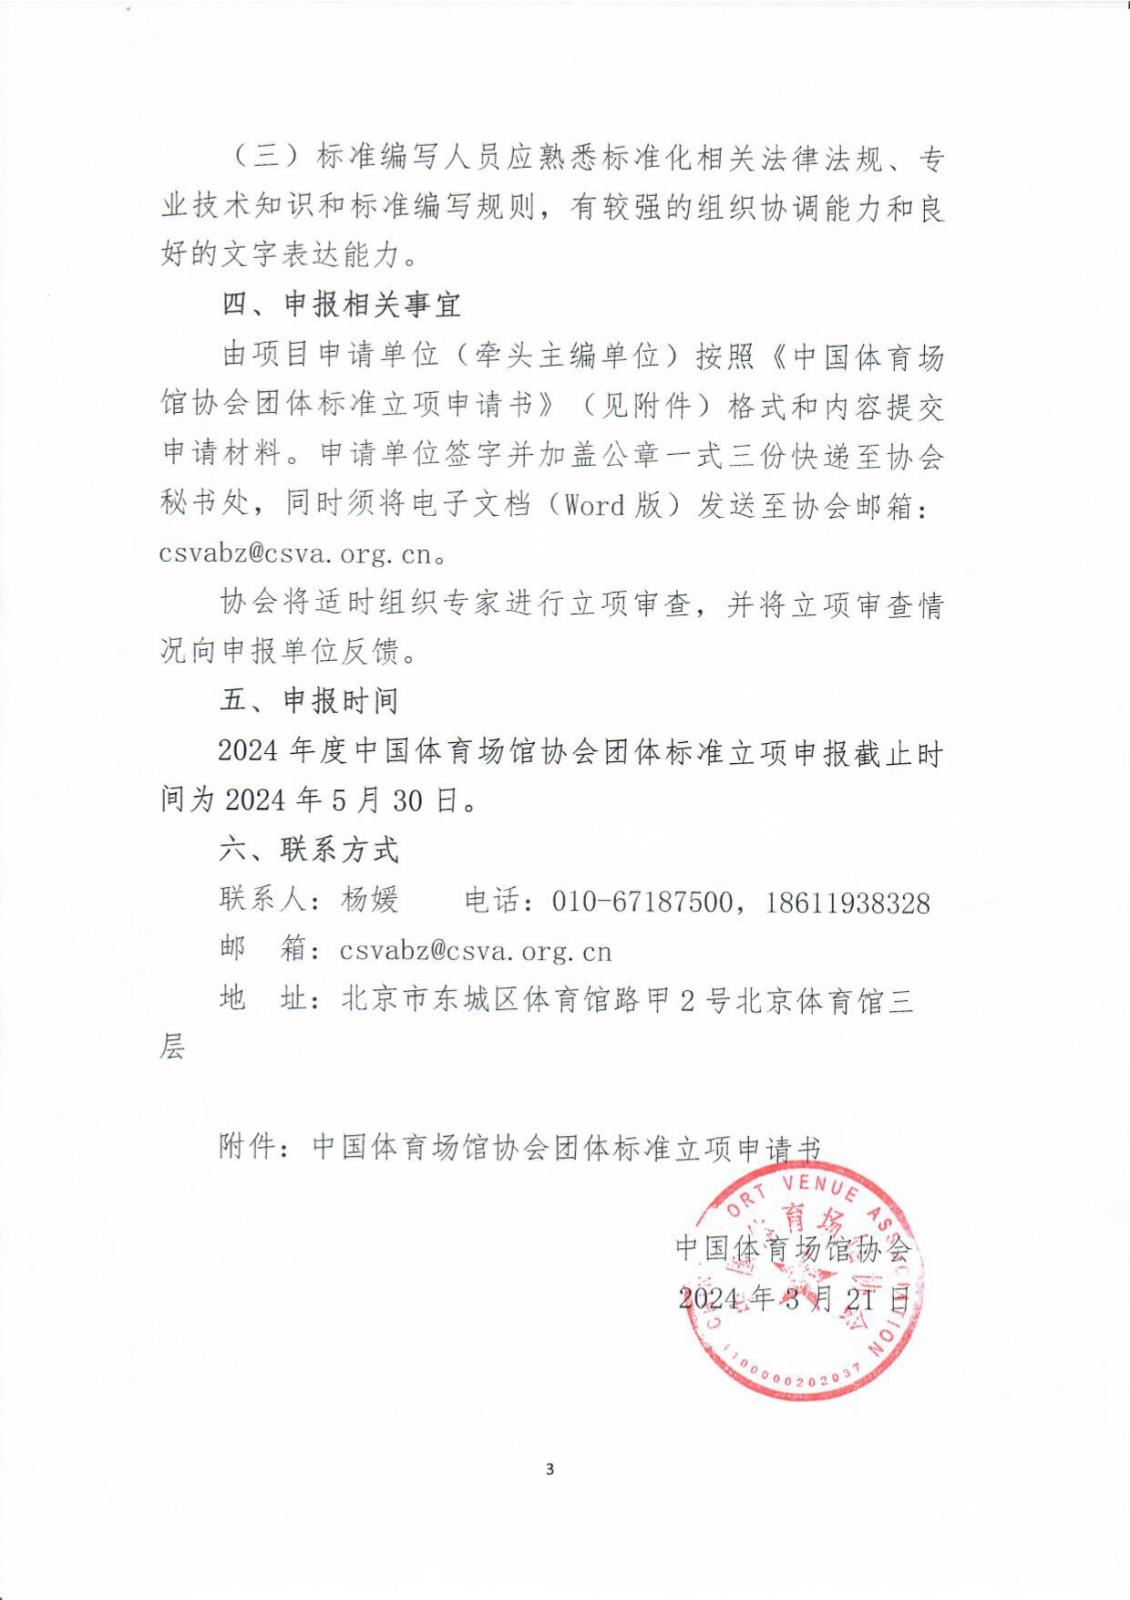 中国体育场馆协会关于征集2024年度团体标准项目的通知_page-0003.jpg